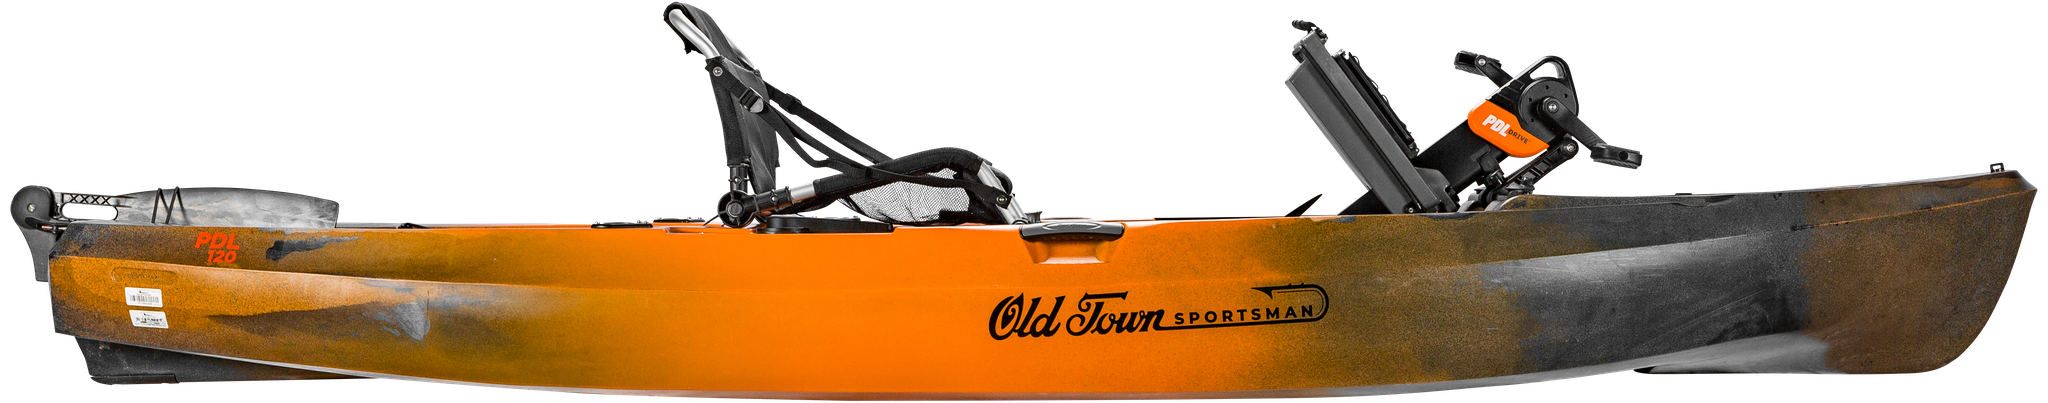 Old Town Sportsman Sportsman 120 PDL Kayak